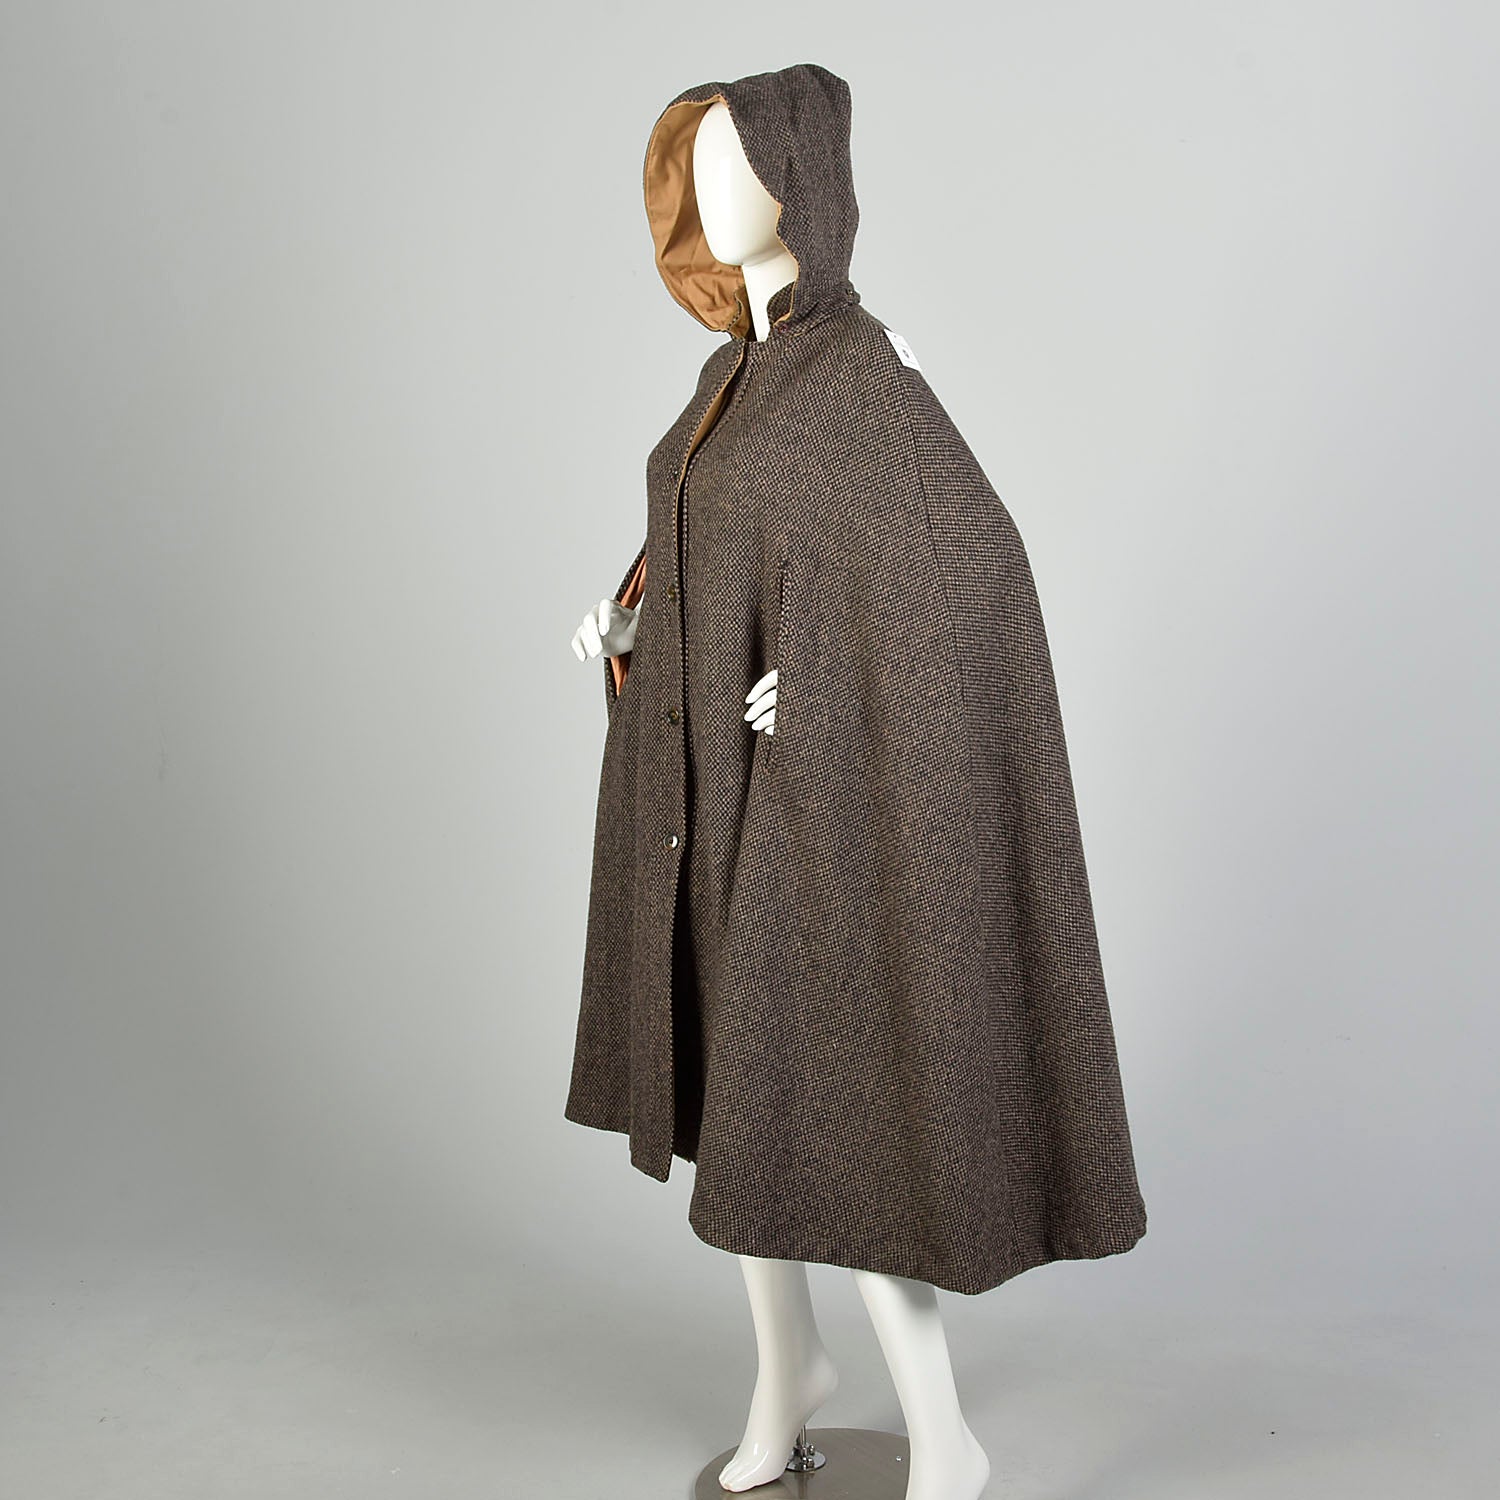 OSFM 1970s Cape Brown Hooded Tweed Wool Vintage Winter Outerwear